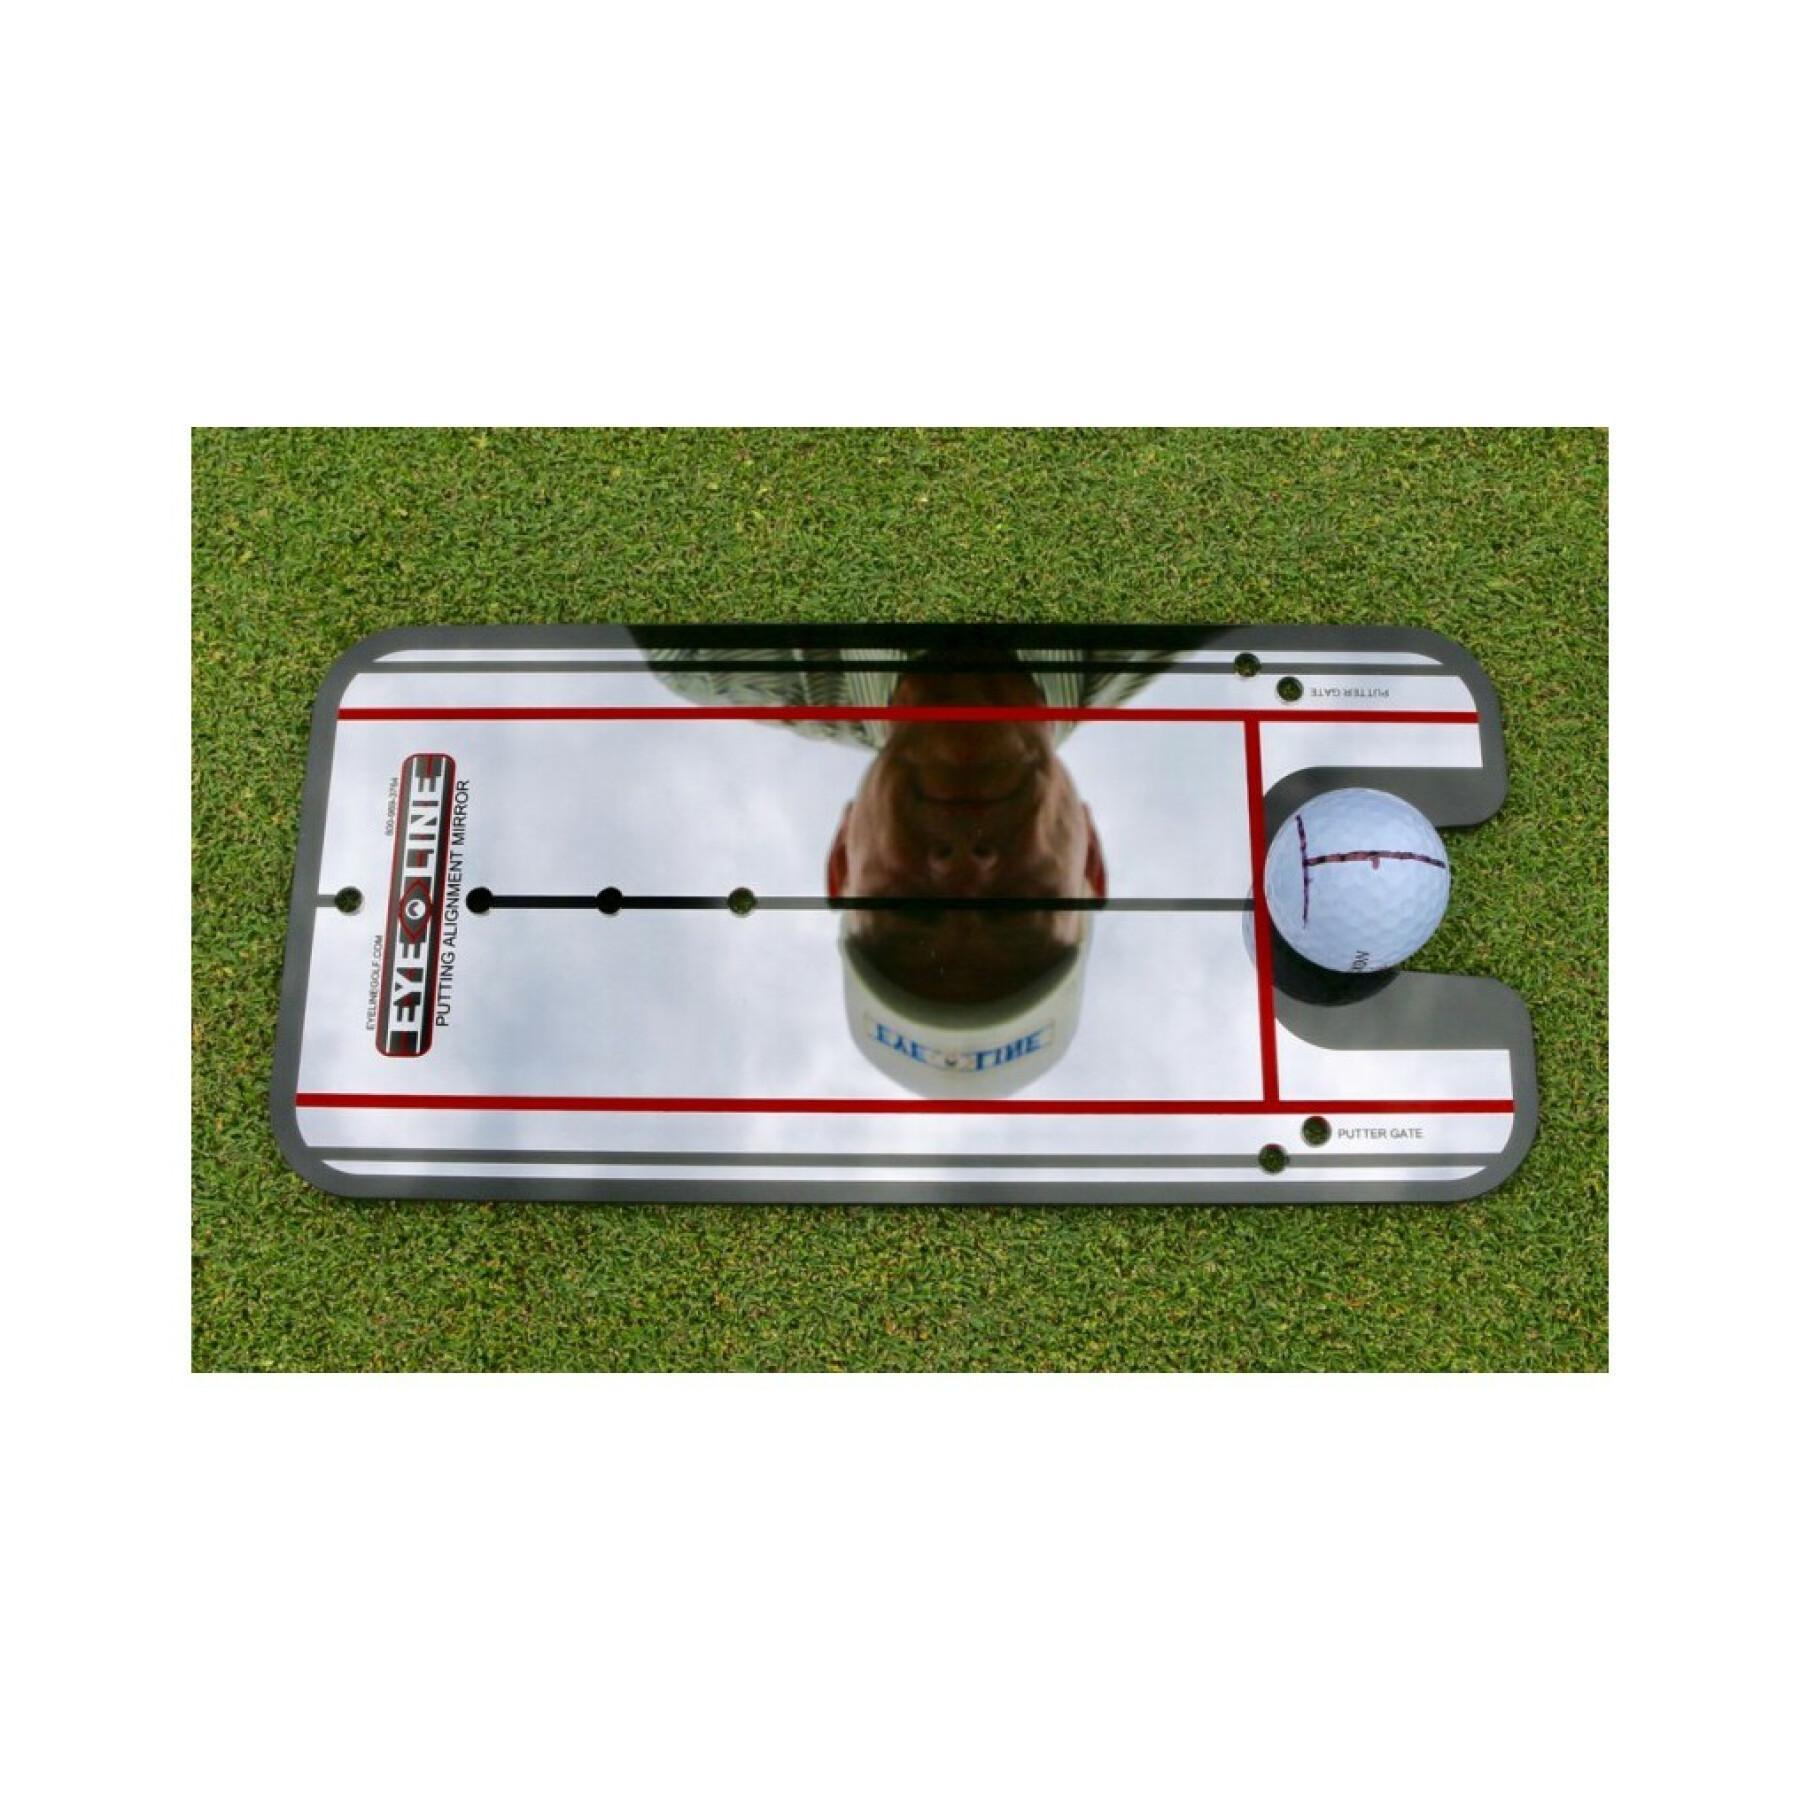 Lustro do ćwiczeń puttowania EyeLine Golf